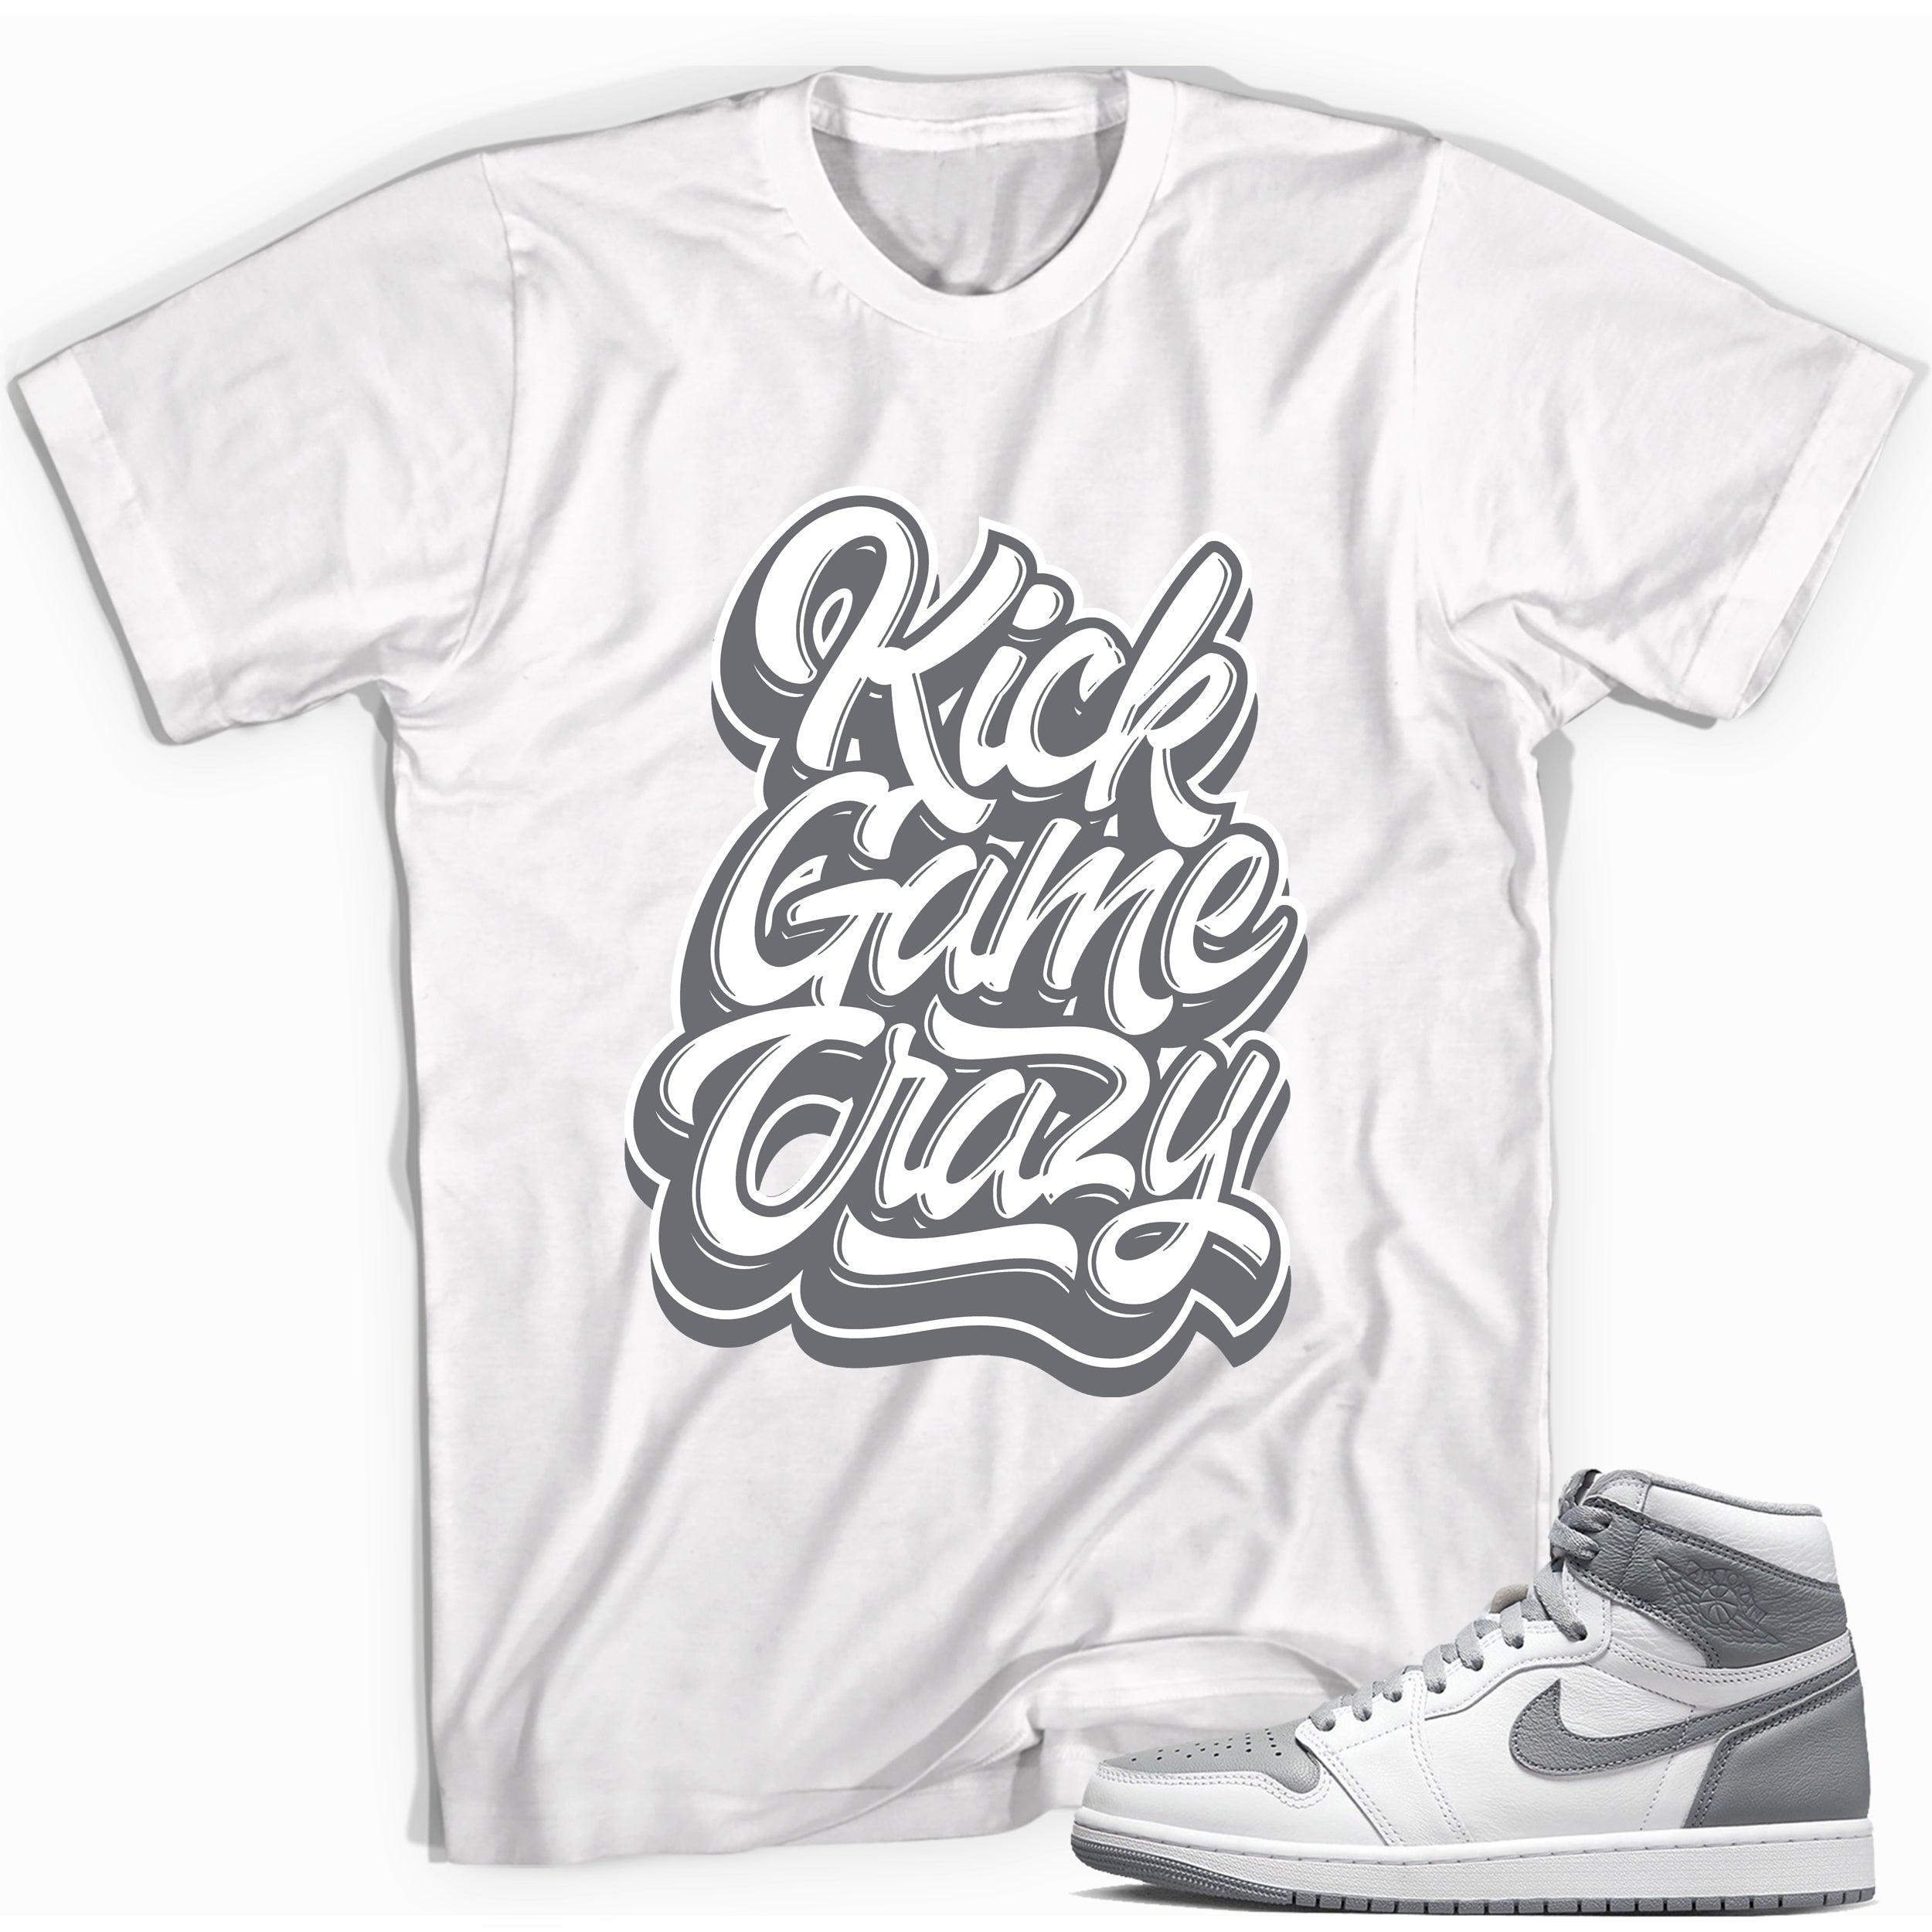 Kick Game Crazy Shirt for Jordan 1s photo